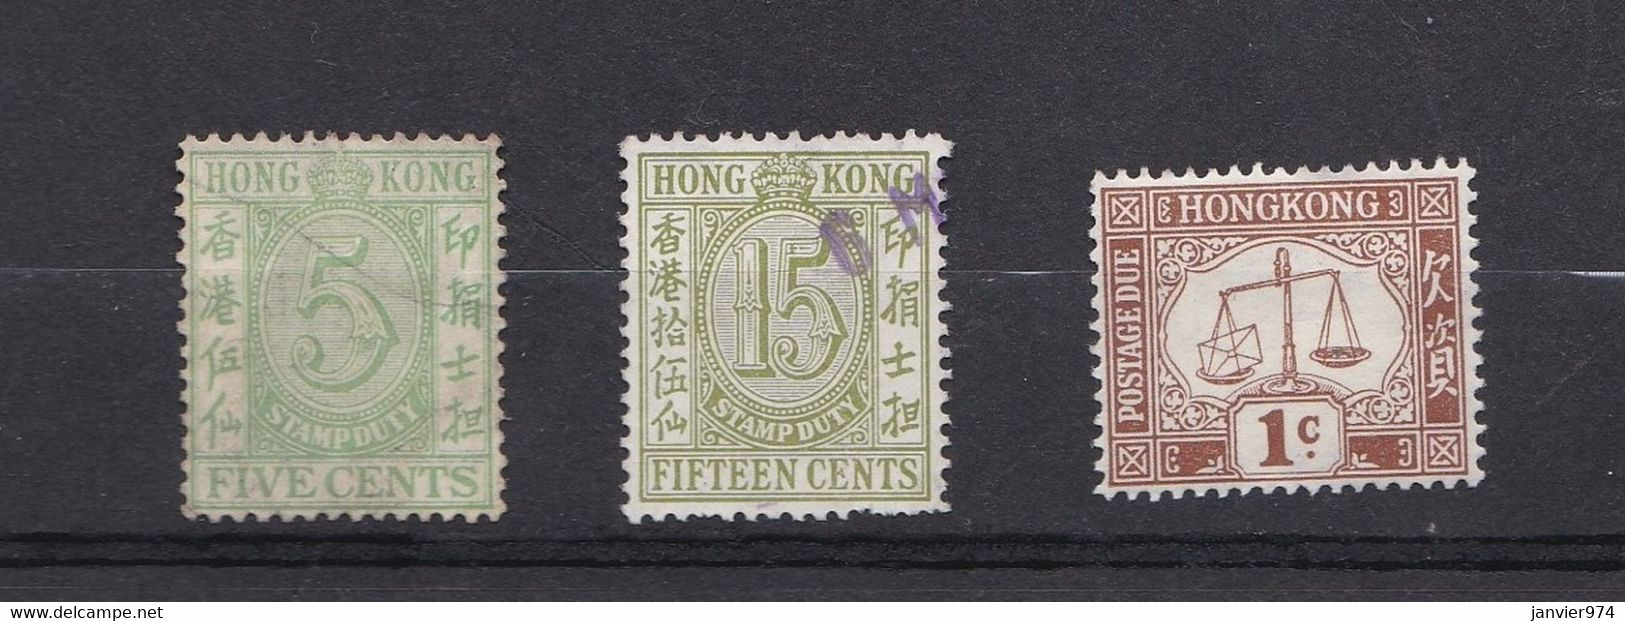 Hong Kong 2 Timbres 5 Cent Et 15 Cents 1938 + Un Timbre Taxe 1924, Voir Scan - Stempelmarke Als Postmarke Verwendet